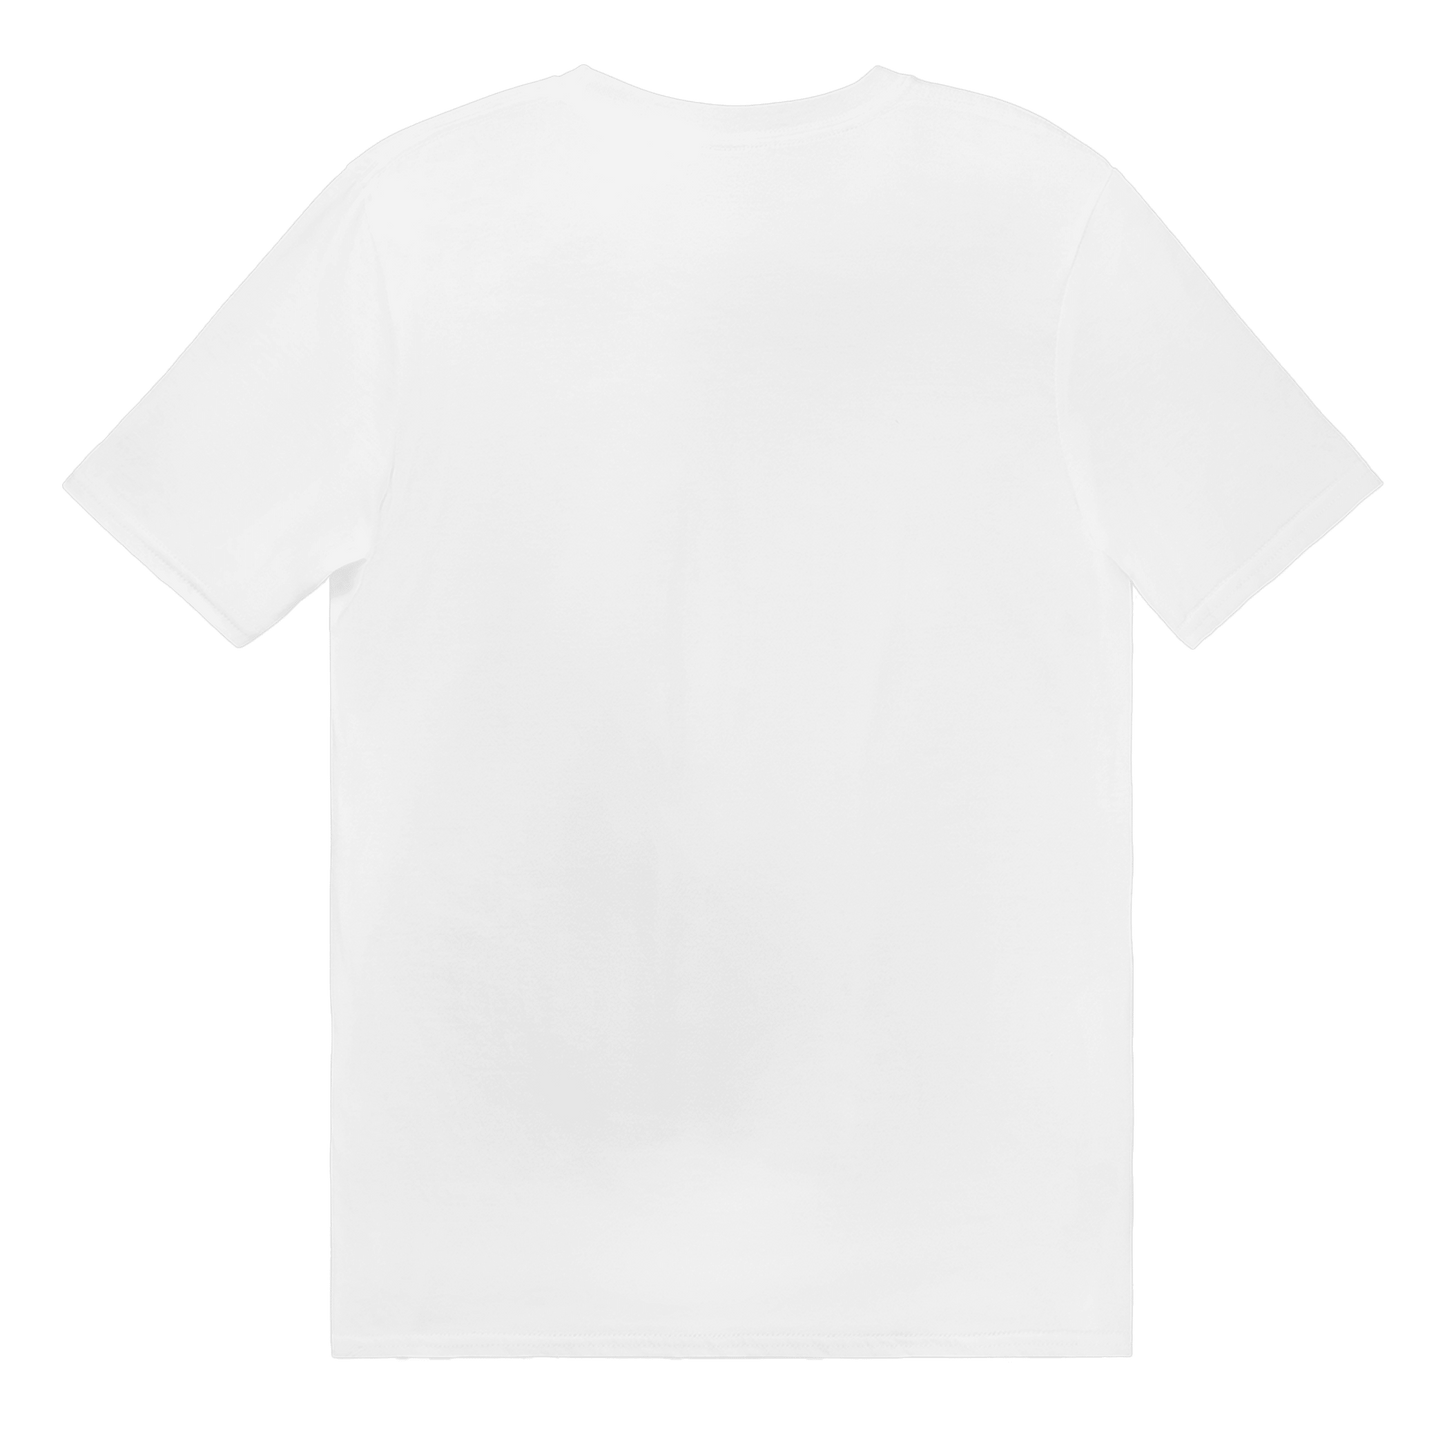 This is Prinskorv - T-shirt 